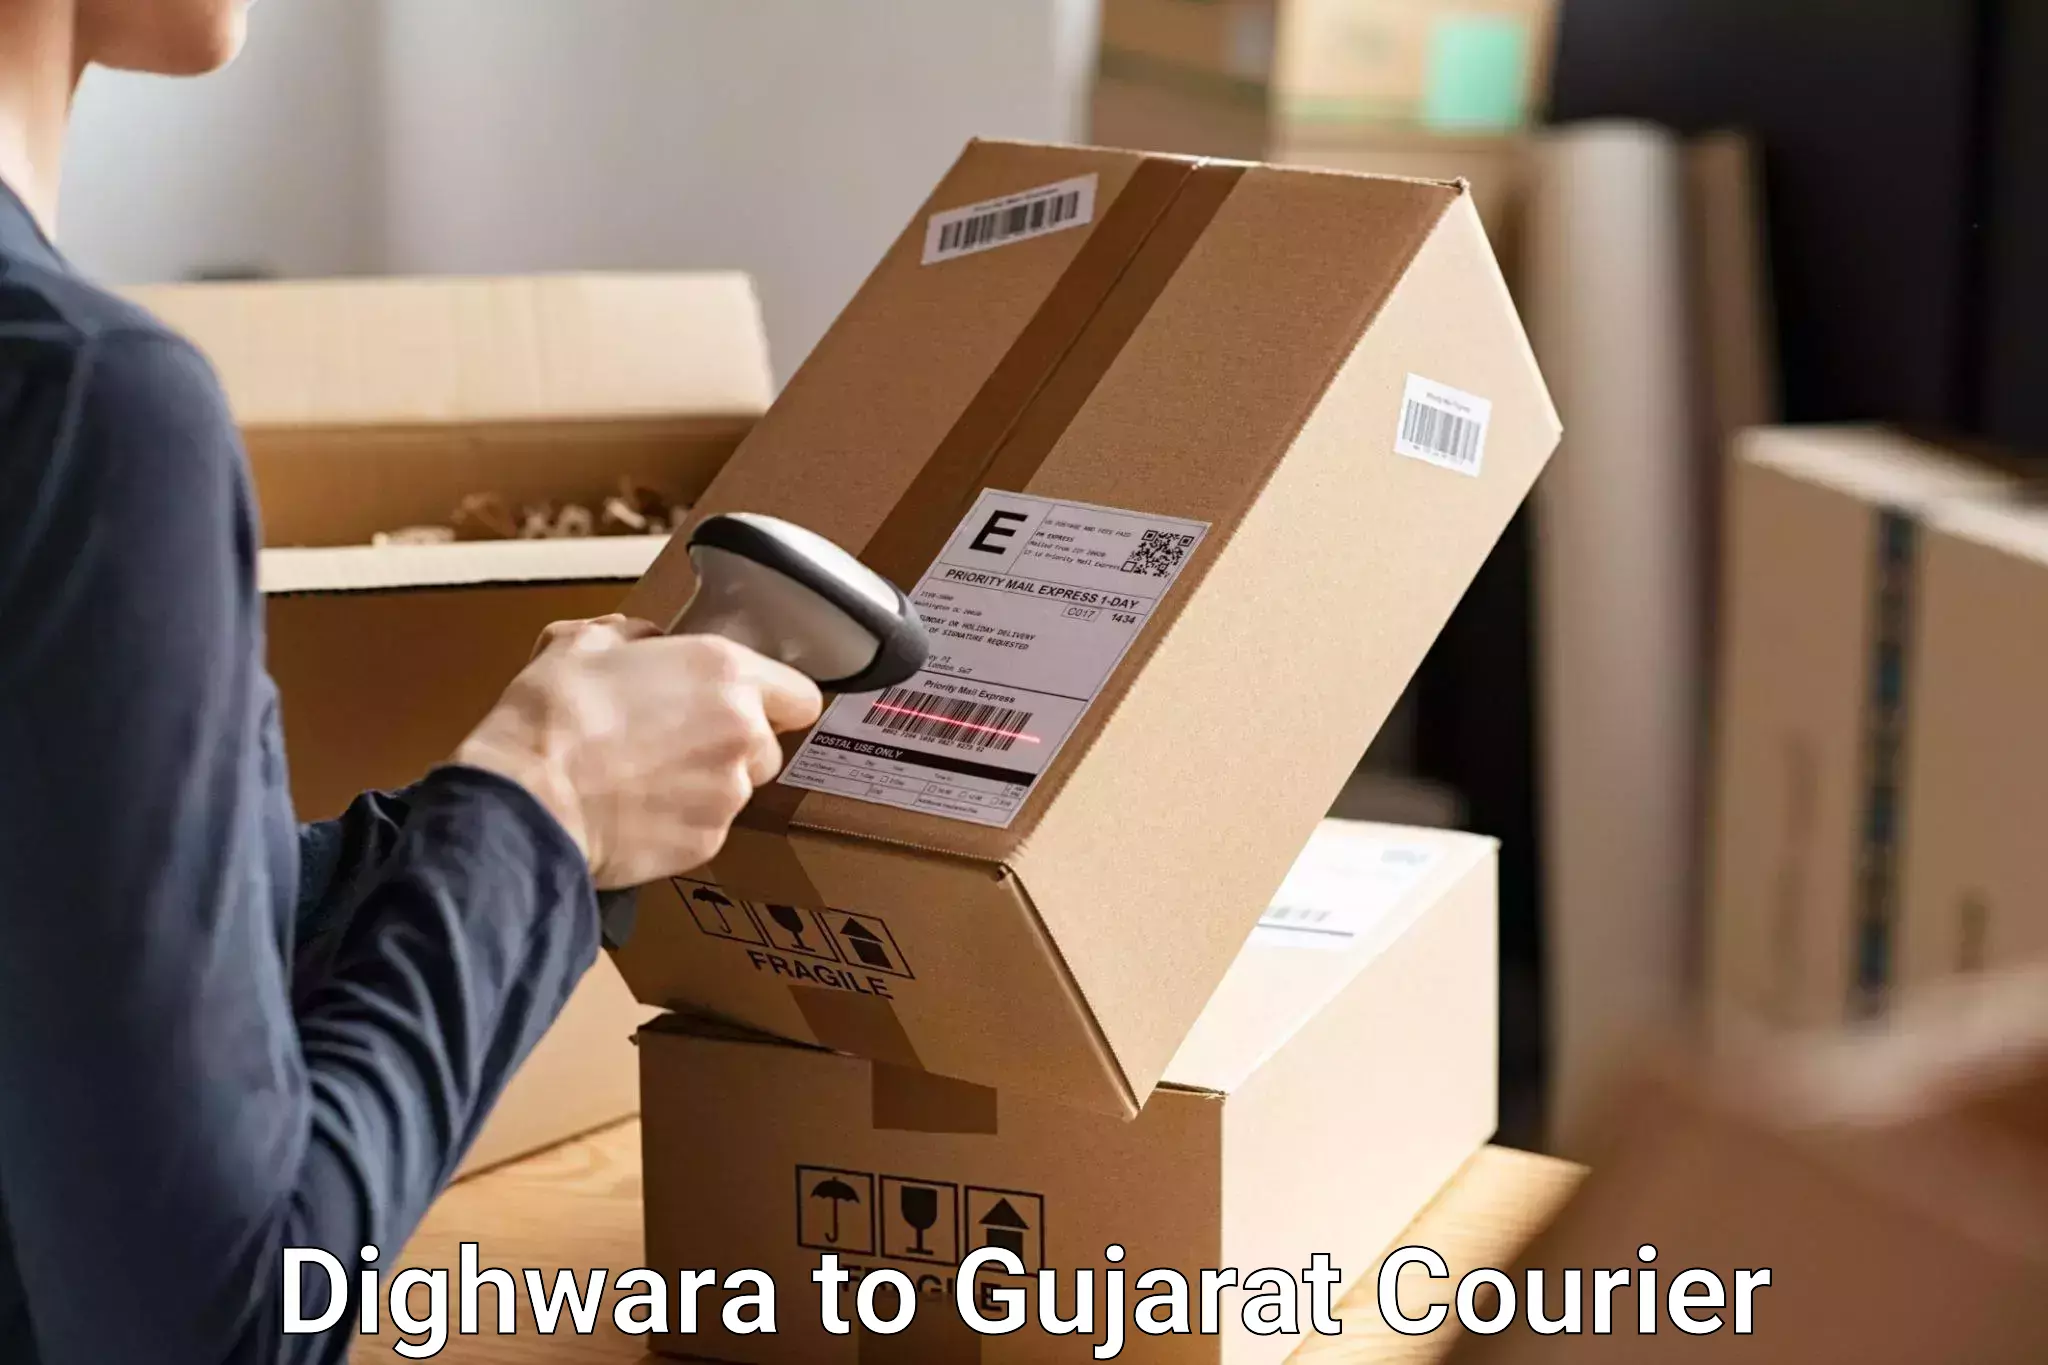 Premium luggage delivery Dighwara to NIT Surat